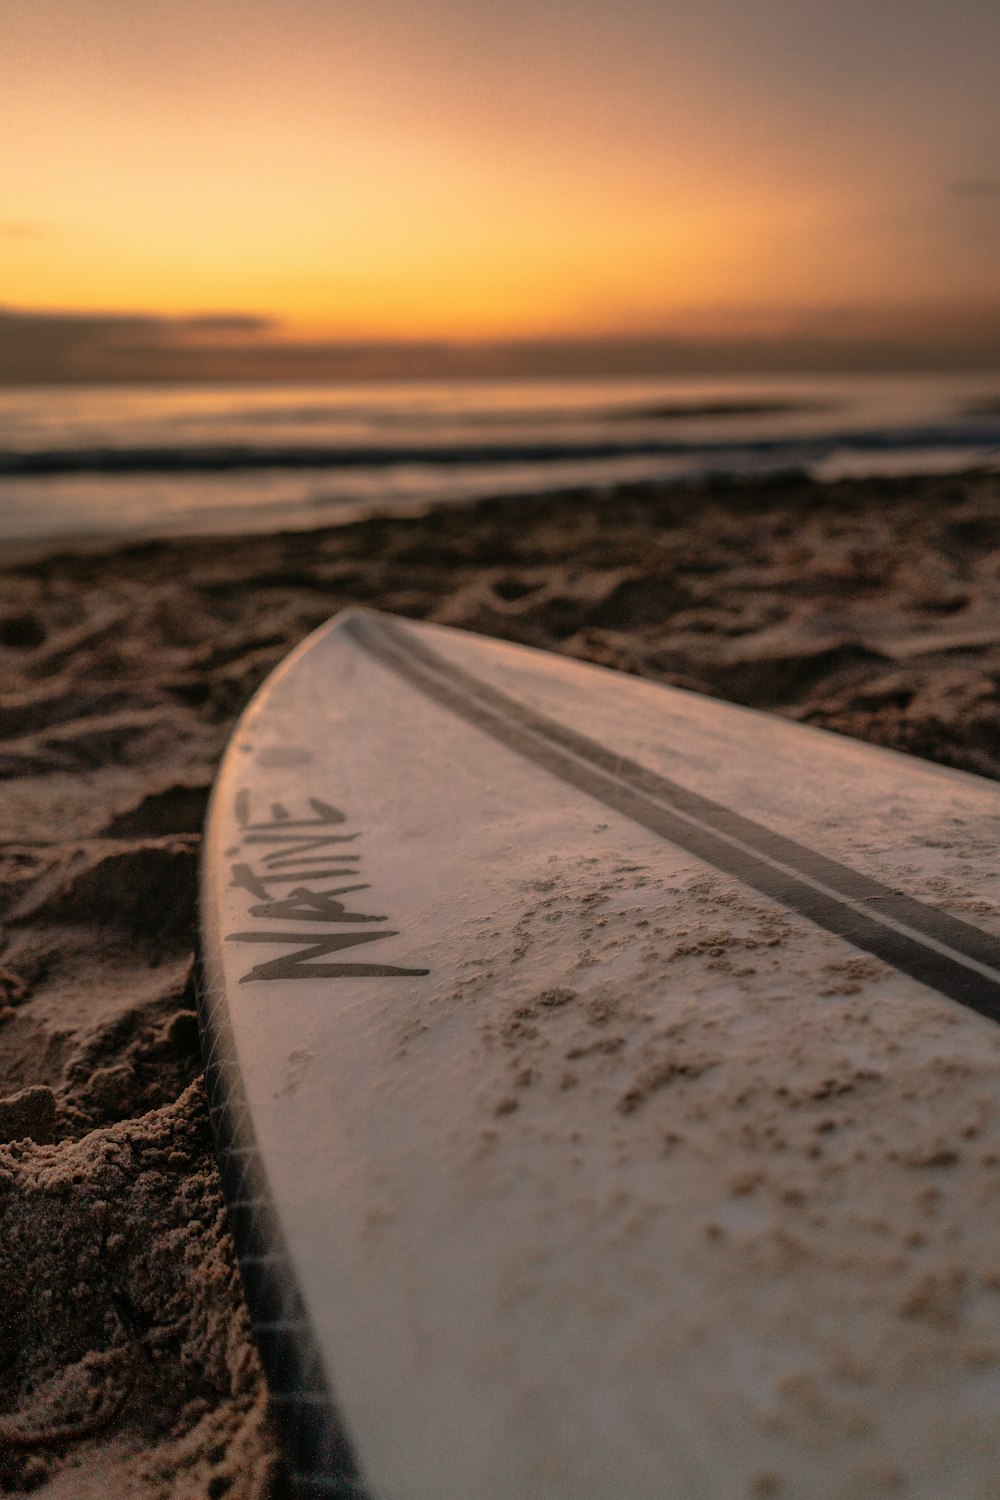 tavola da surf bianca su sabbia marrone durante il tramonto